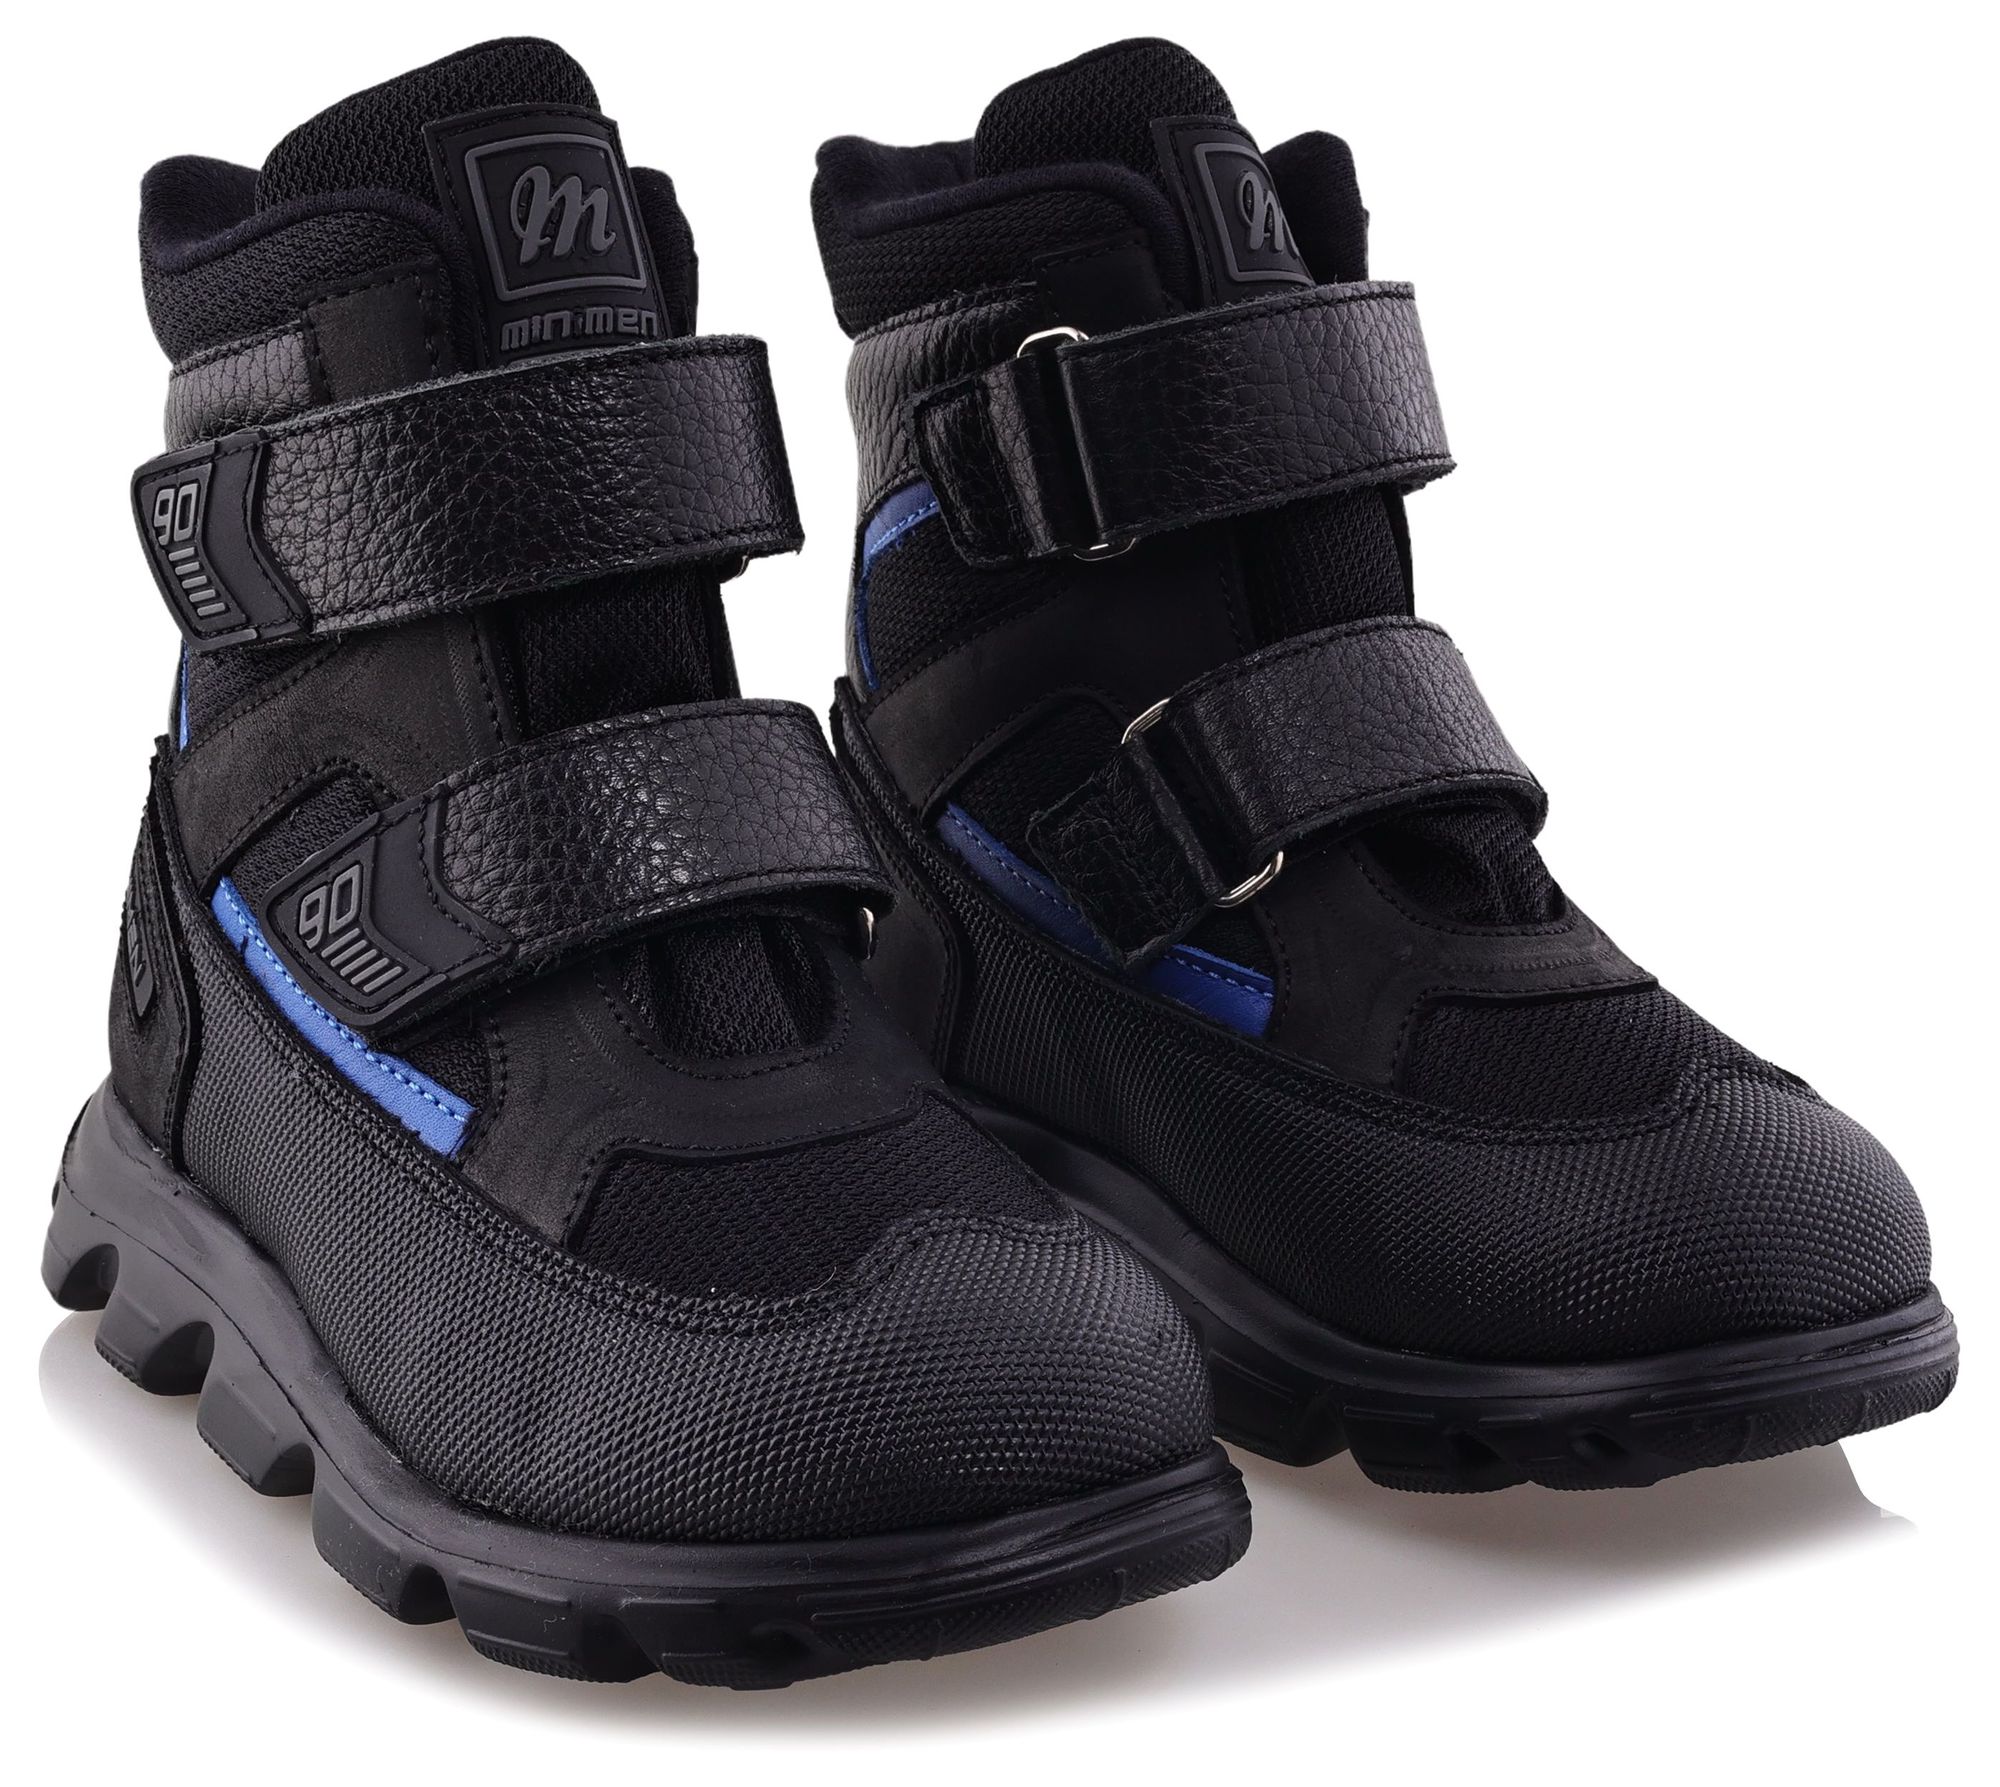 Ботинки Minimen для мальчиков, чёрные, размер 32, 2641-54-23B-01